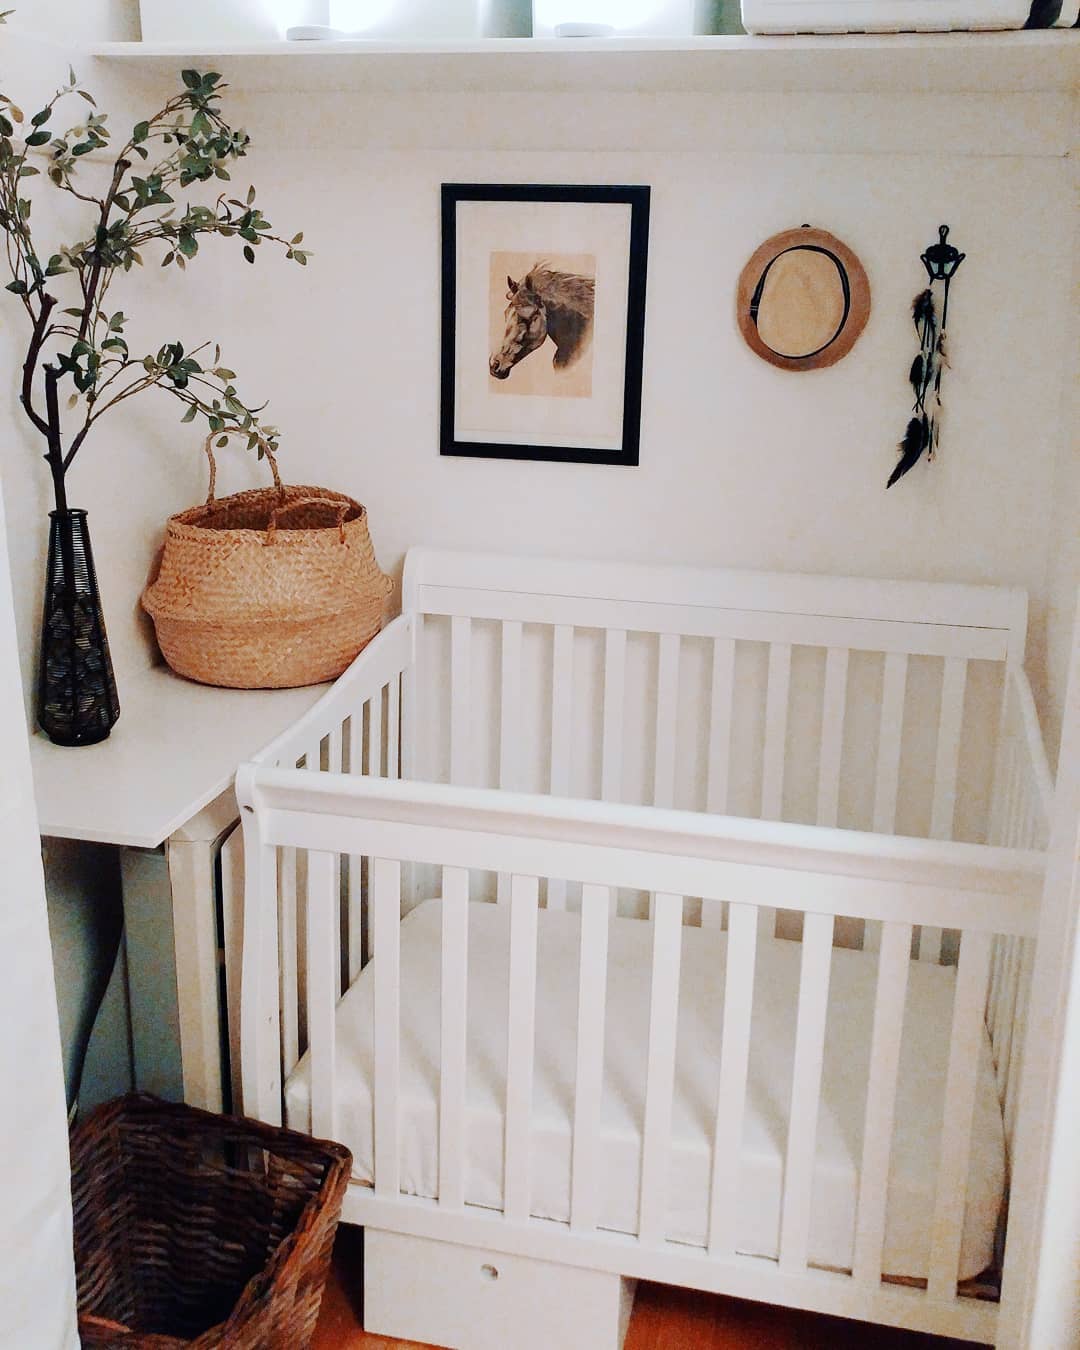 Baby nursery in closet. Photo by Instagram user @emmeesau